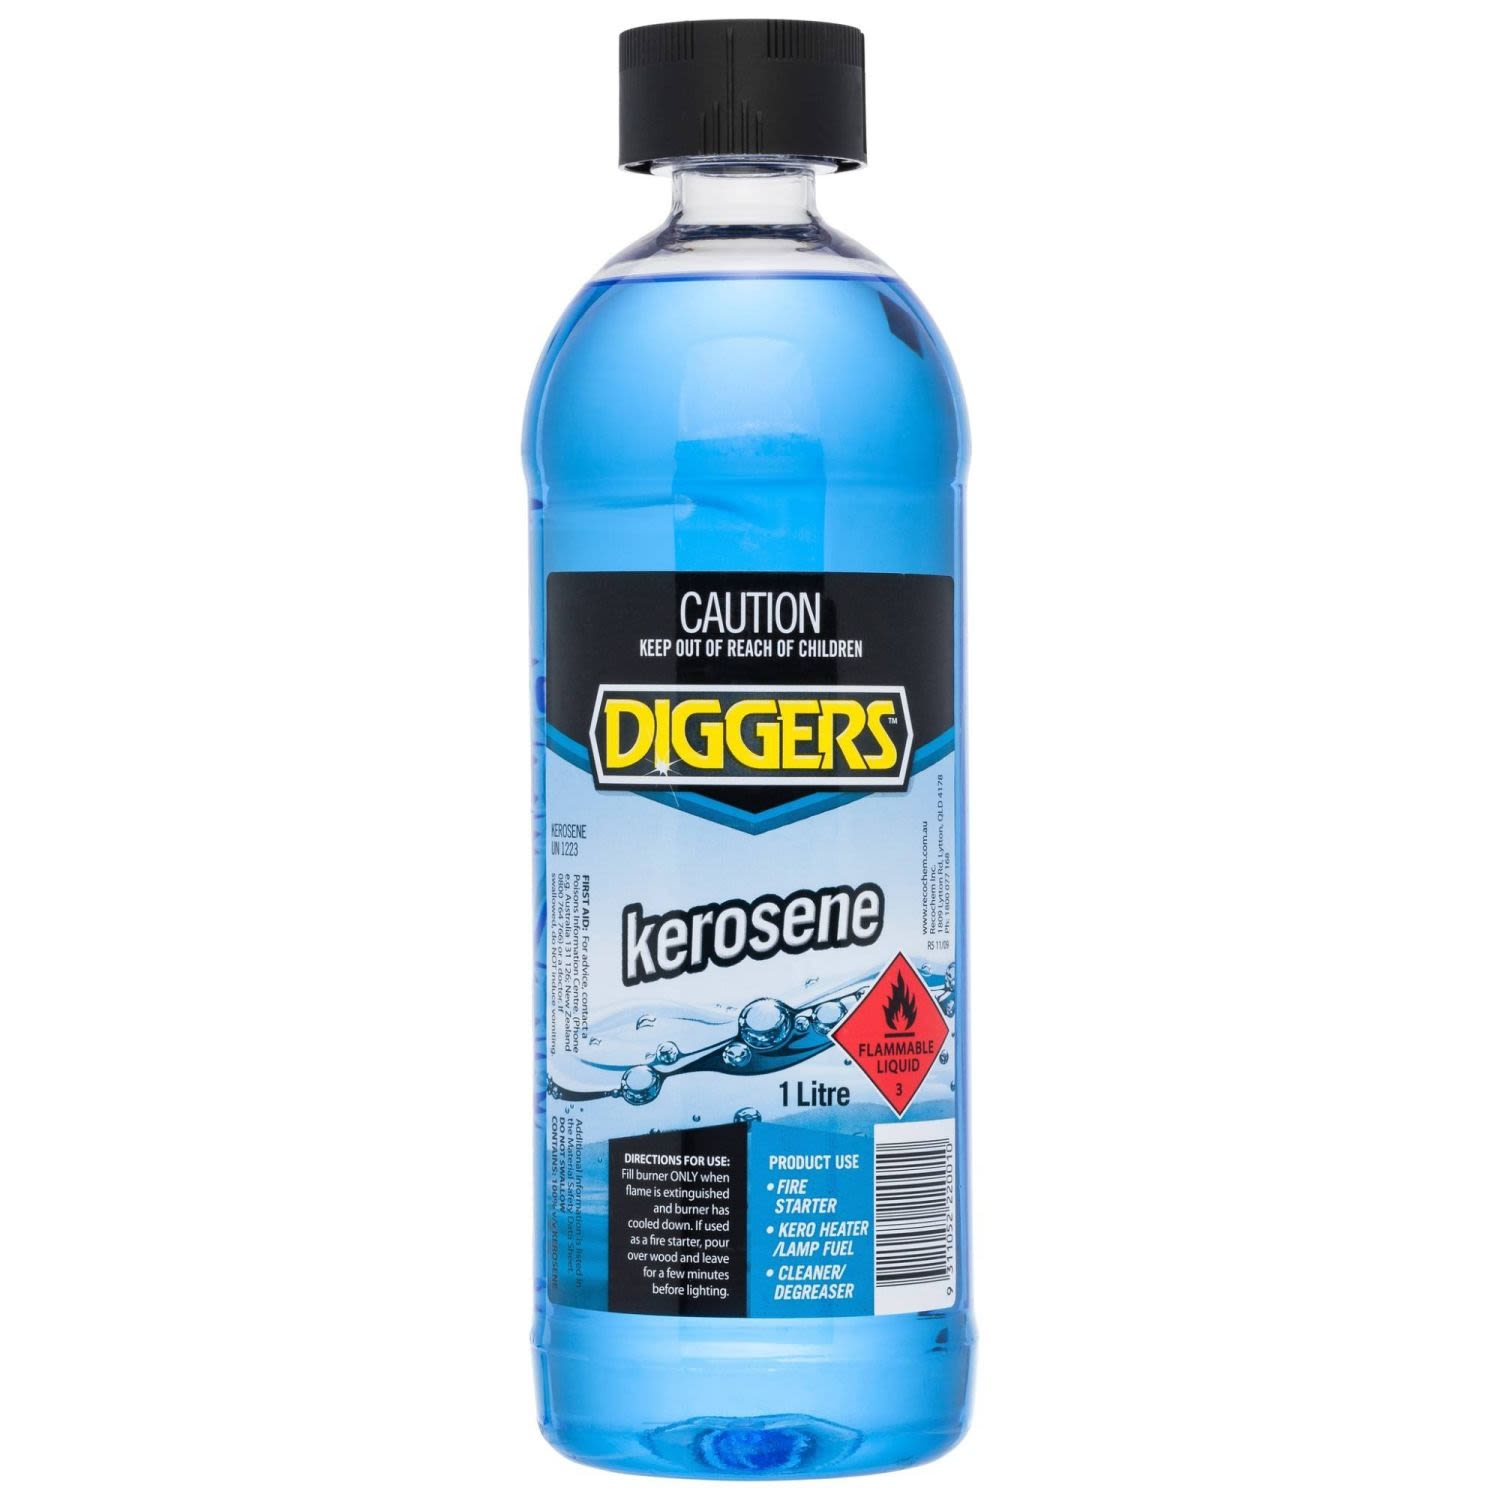 Diggers Kerosene, 1 Litre